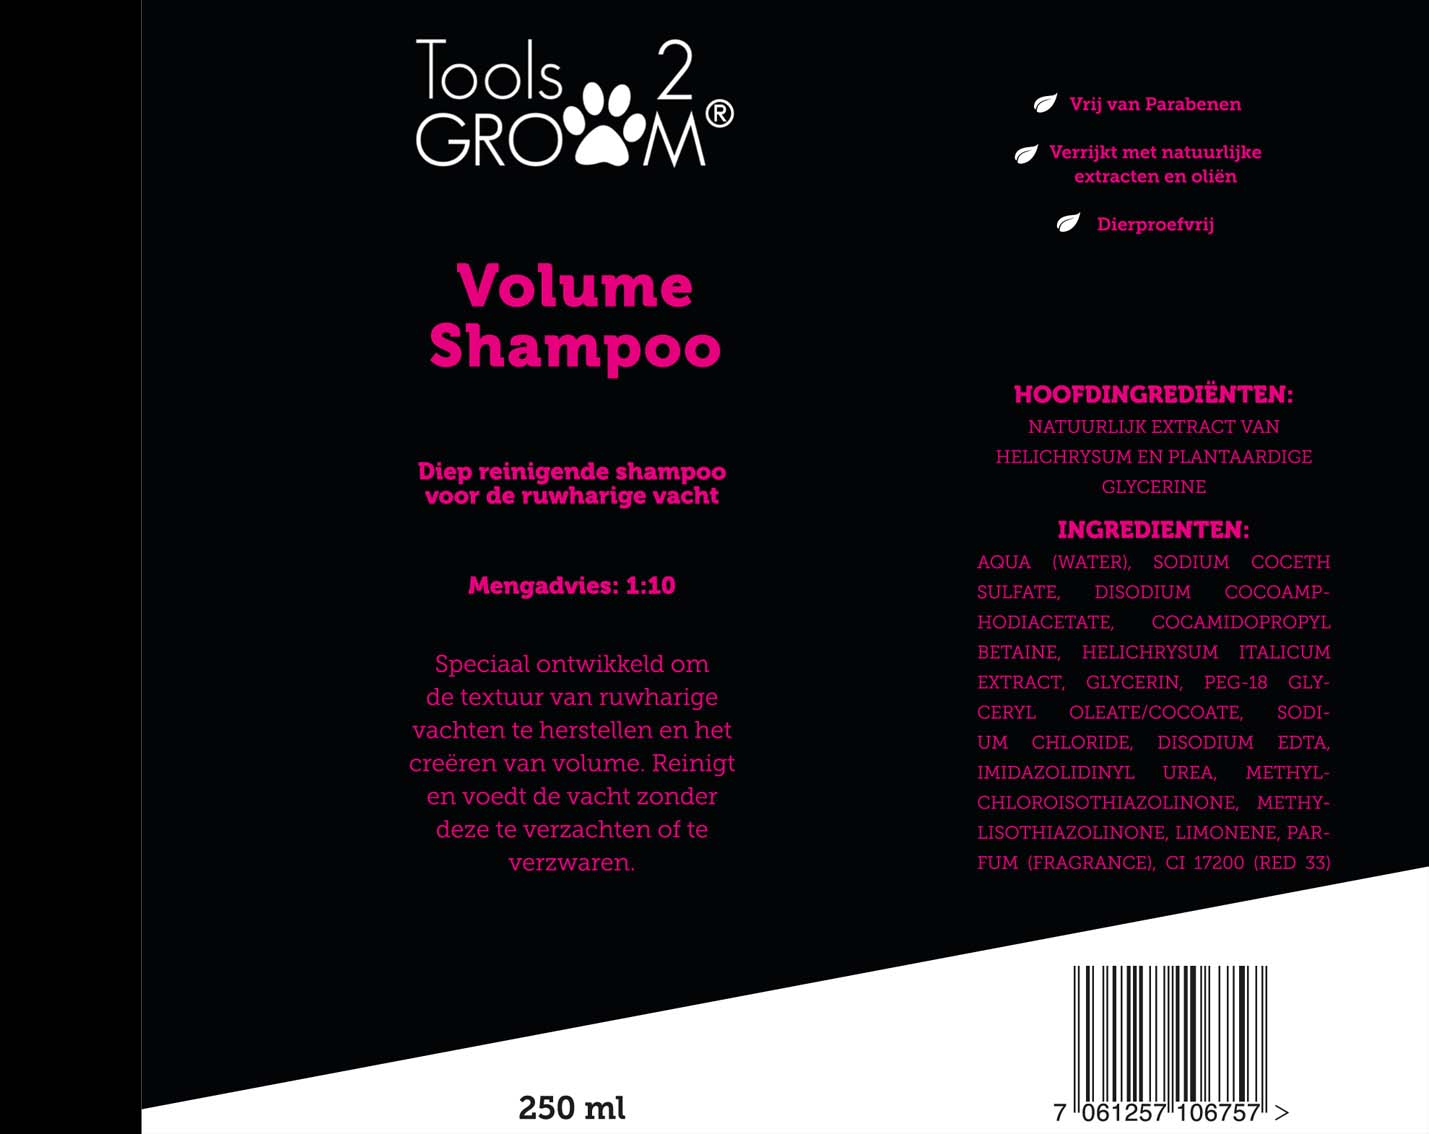 Tools-2-Groom volume hondenshampoo 250ML 